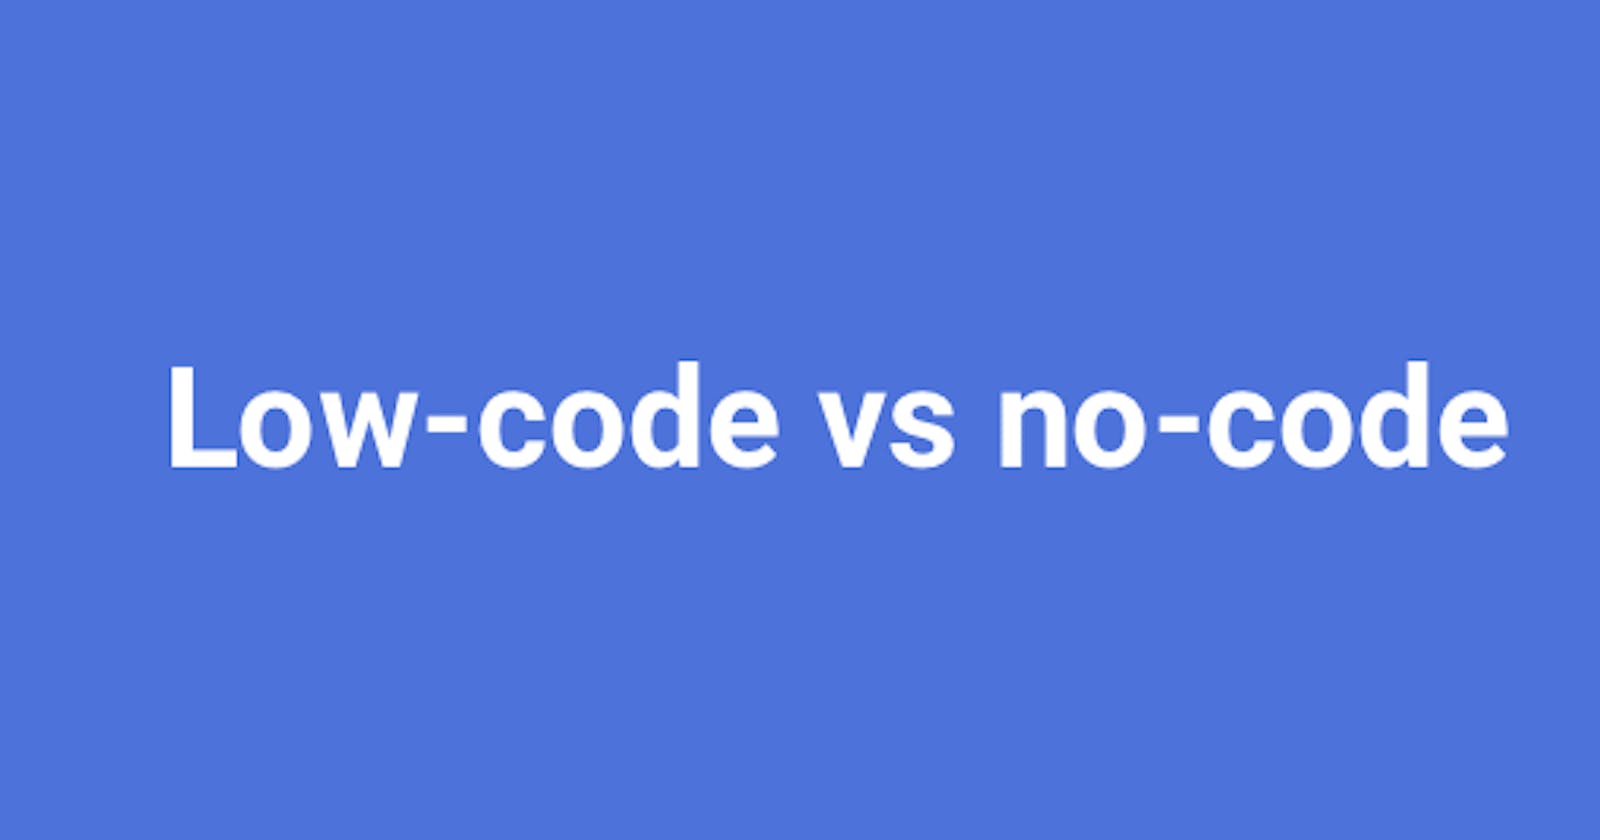 Understanding the low-code vs no-code debate